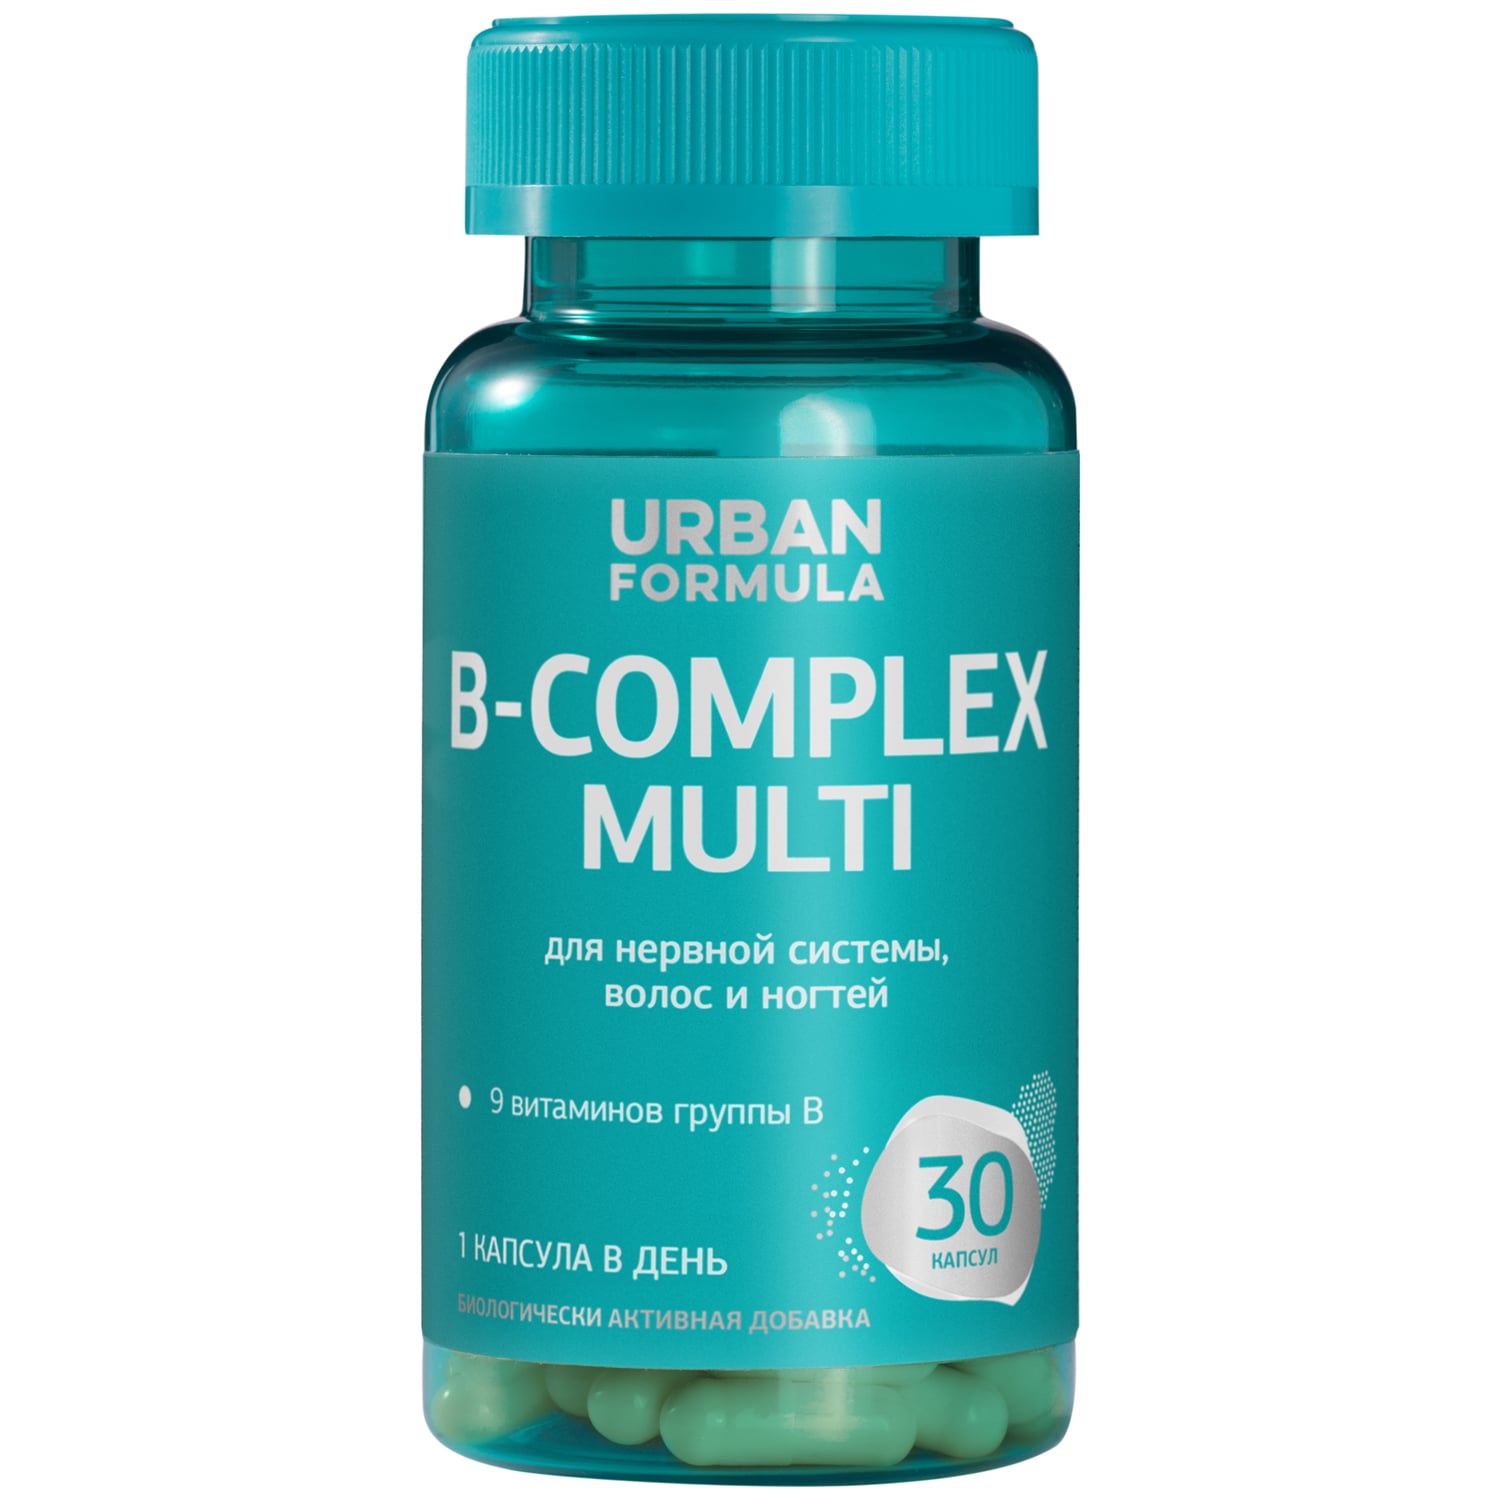 Urban Formula Комплекс витаминов группы B для нервной системы, красивых волос и ногтей B-Complex Multi, 30 капсул (Urban Formula, Basic)